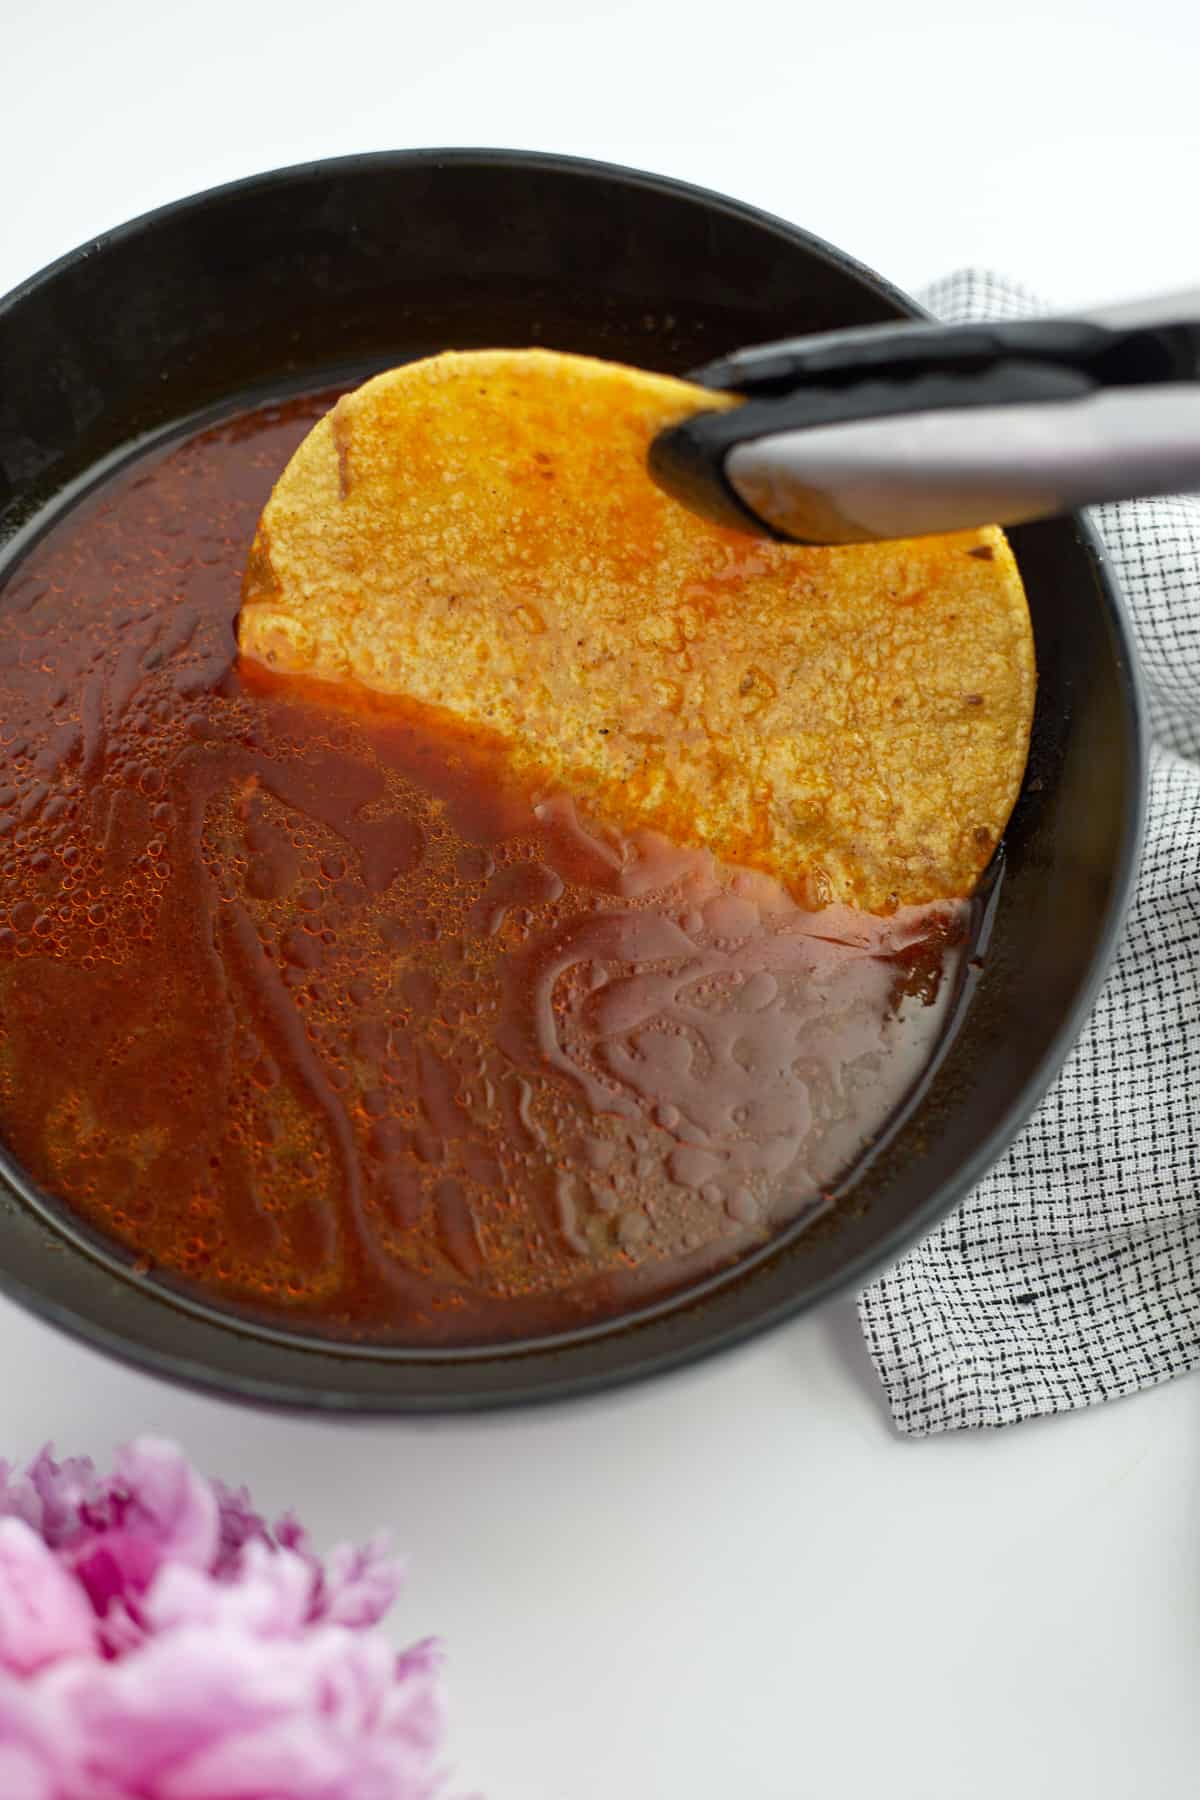 tongs dipping a corn tortilla into birria sauce